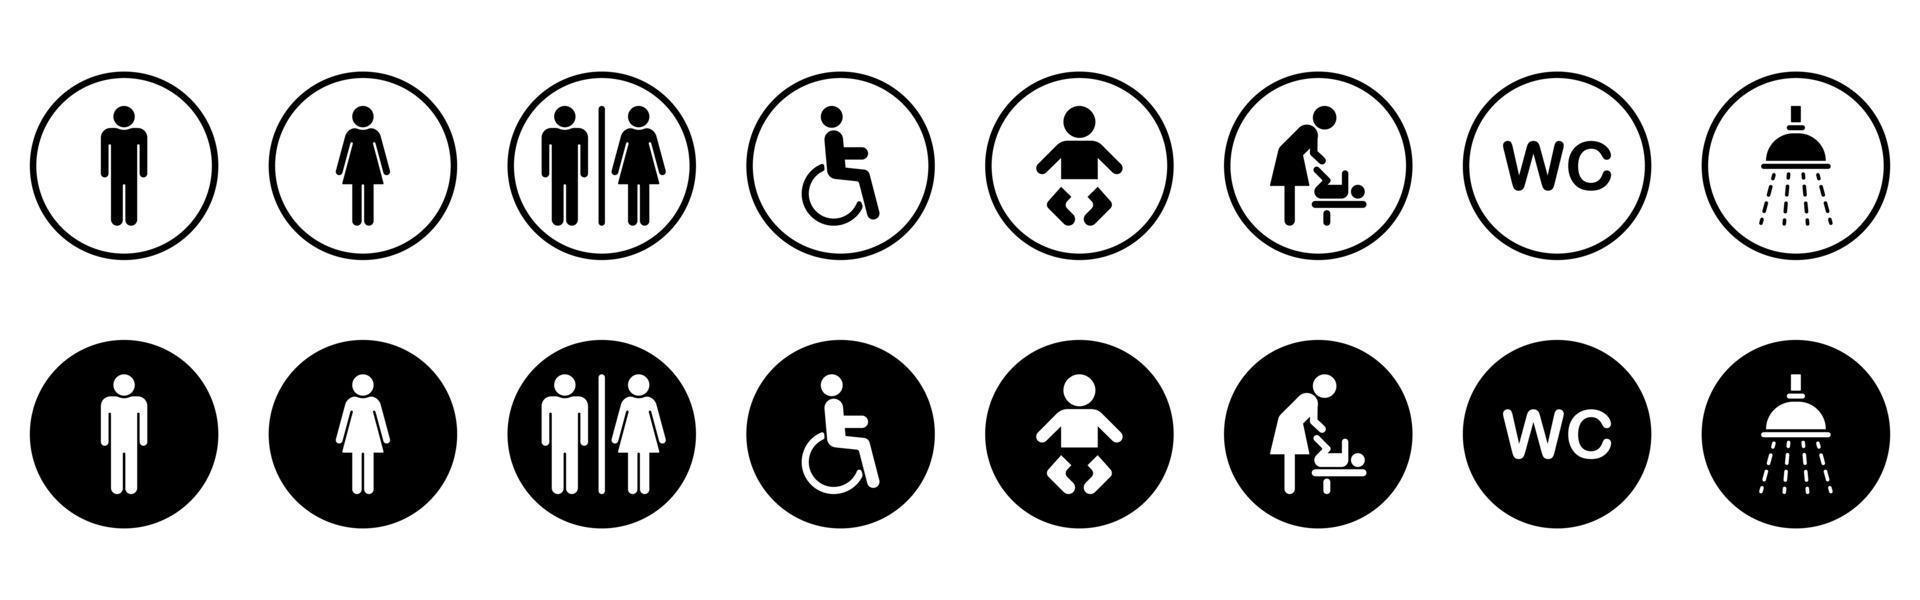 uppsättning toalett siluett ikon. mor och baby rum ikon. wc-skylt på dörren för offentlig toalett. tecken på tvättrum för män, kvinnor, funktionshindrade och barn. symboler toalett. vektor illustration.